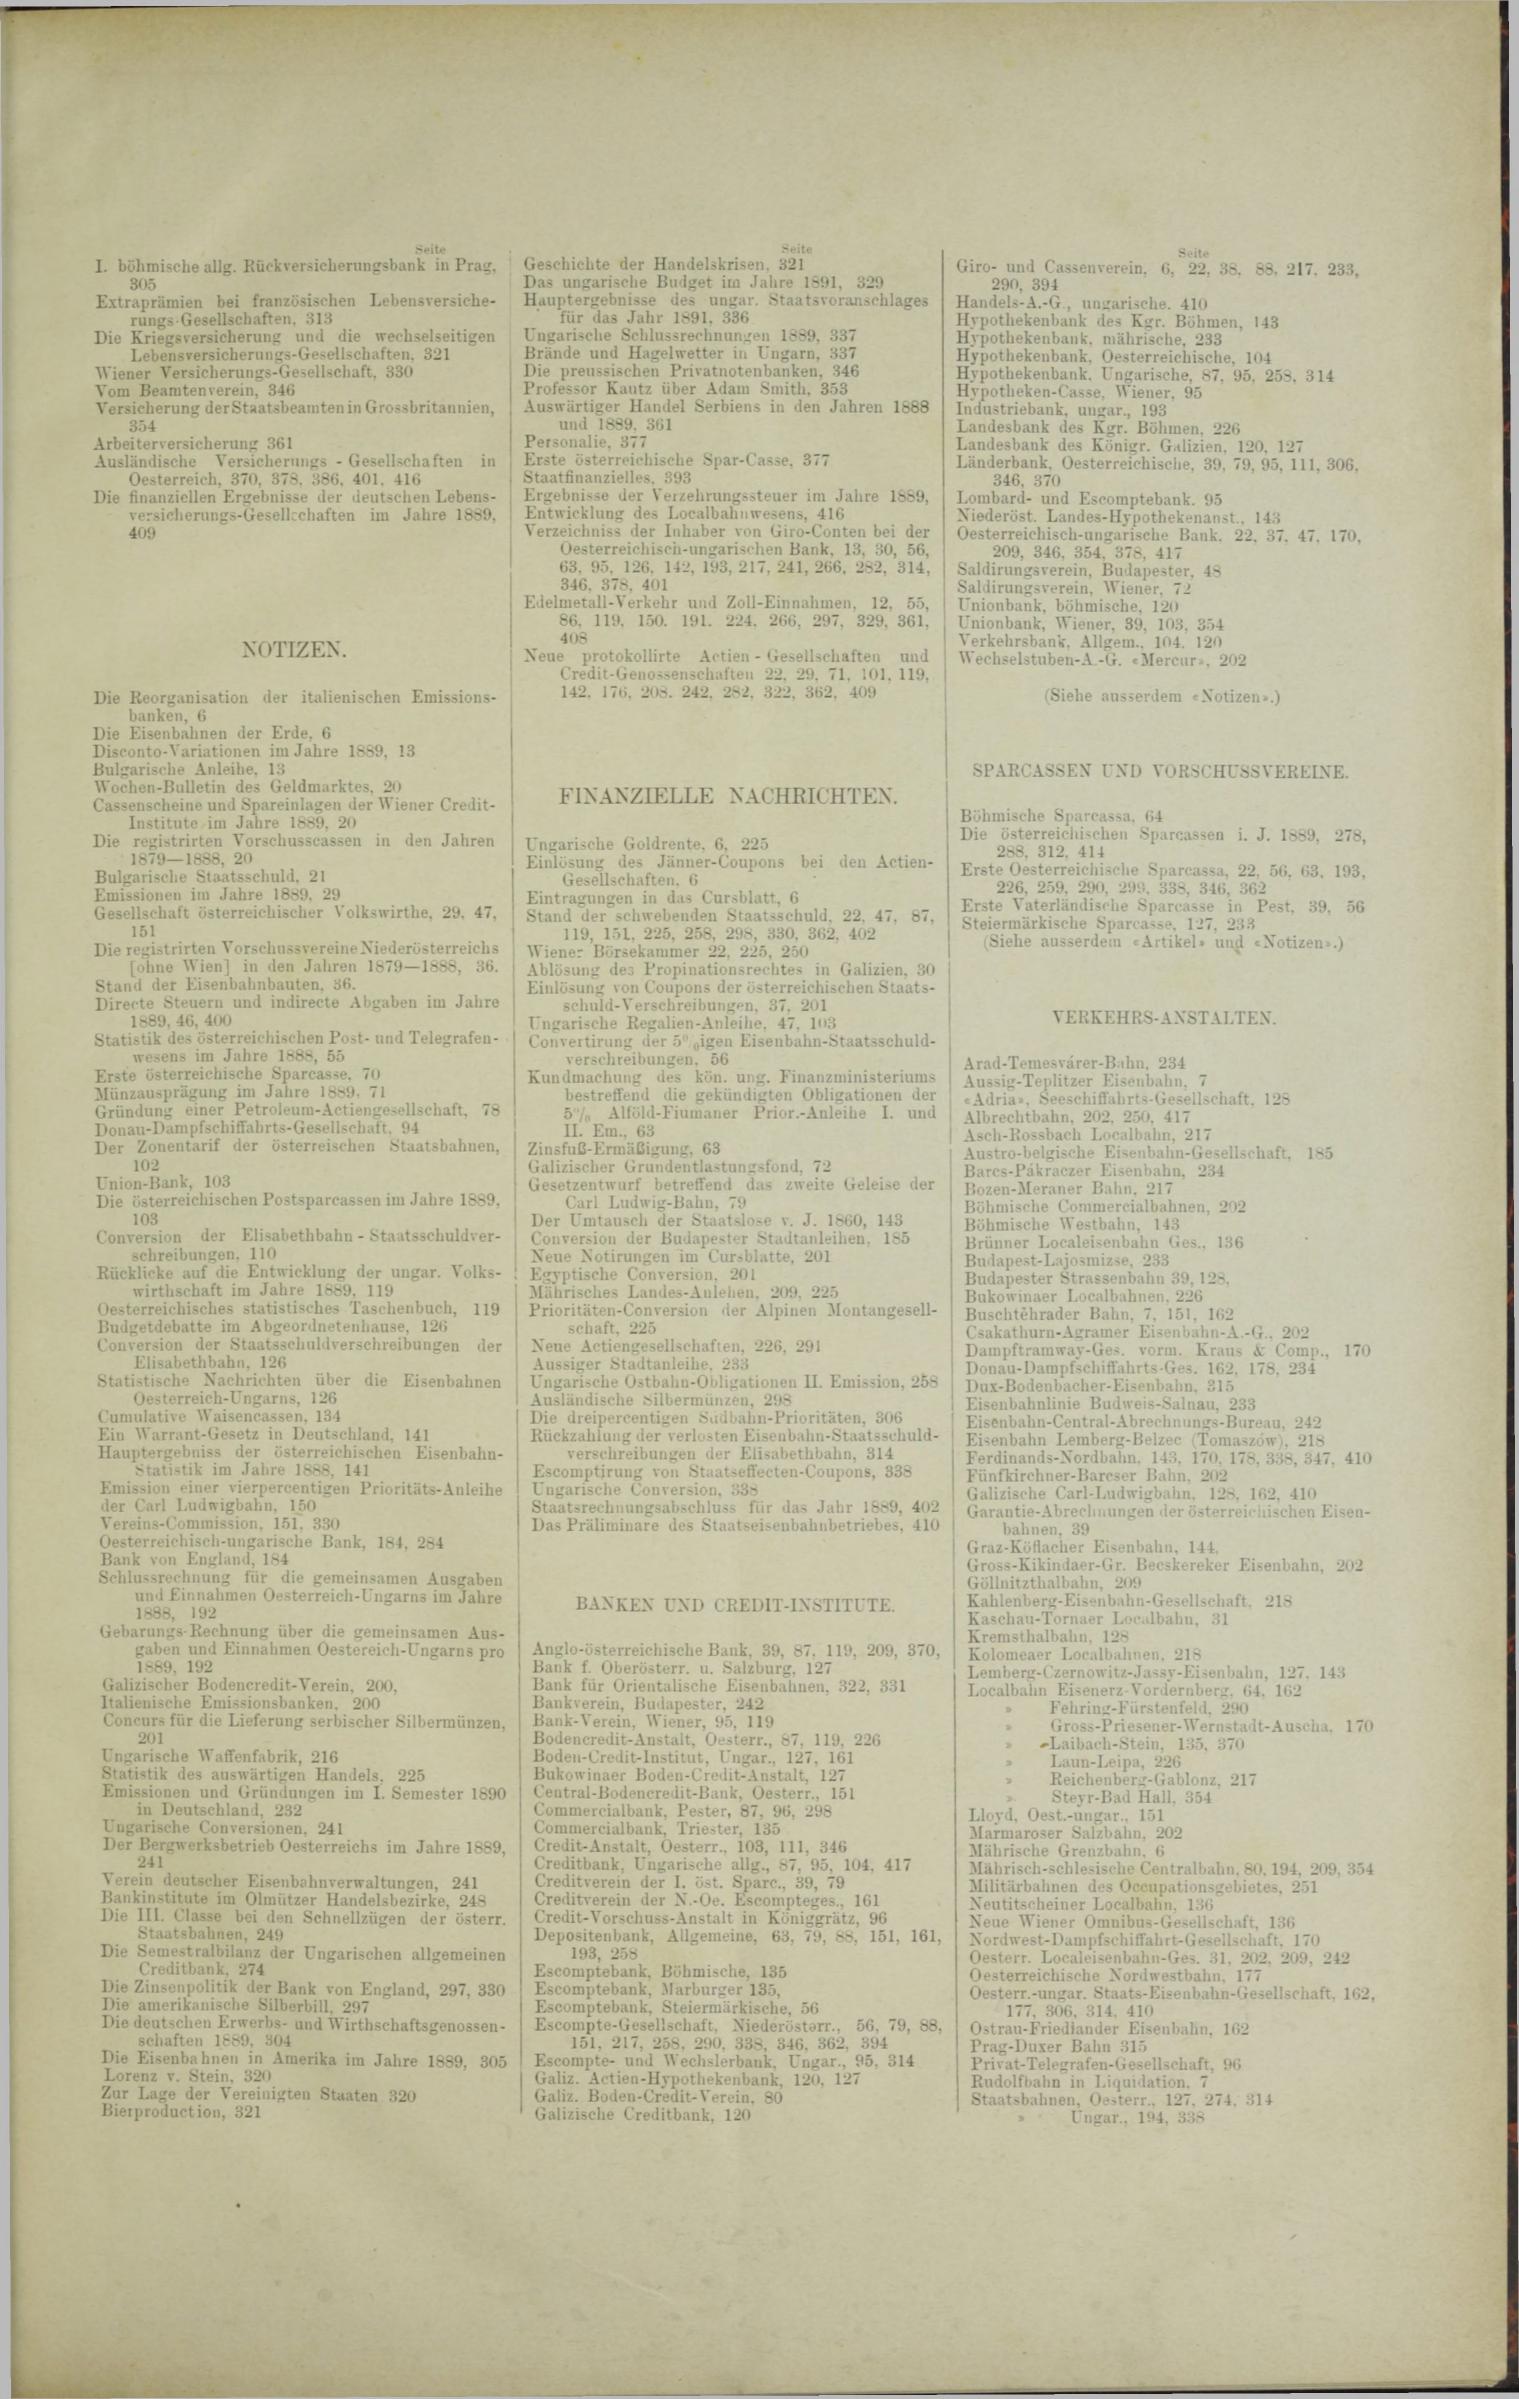 Der Tresor 23.01.1890 - Seite 11